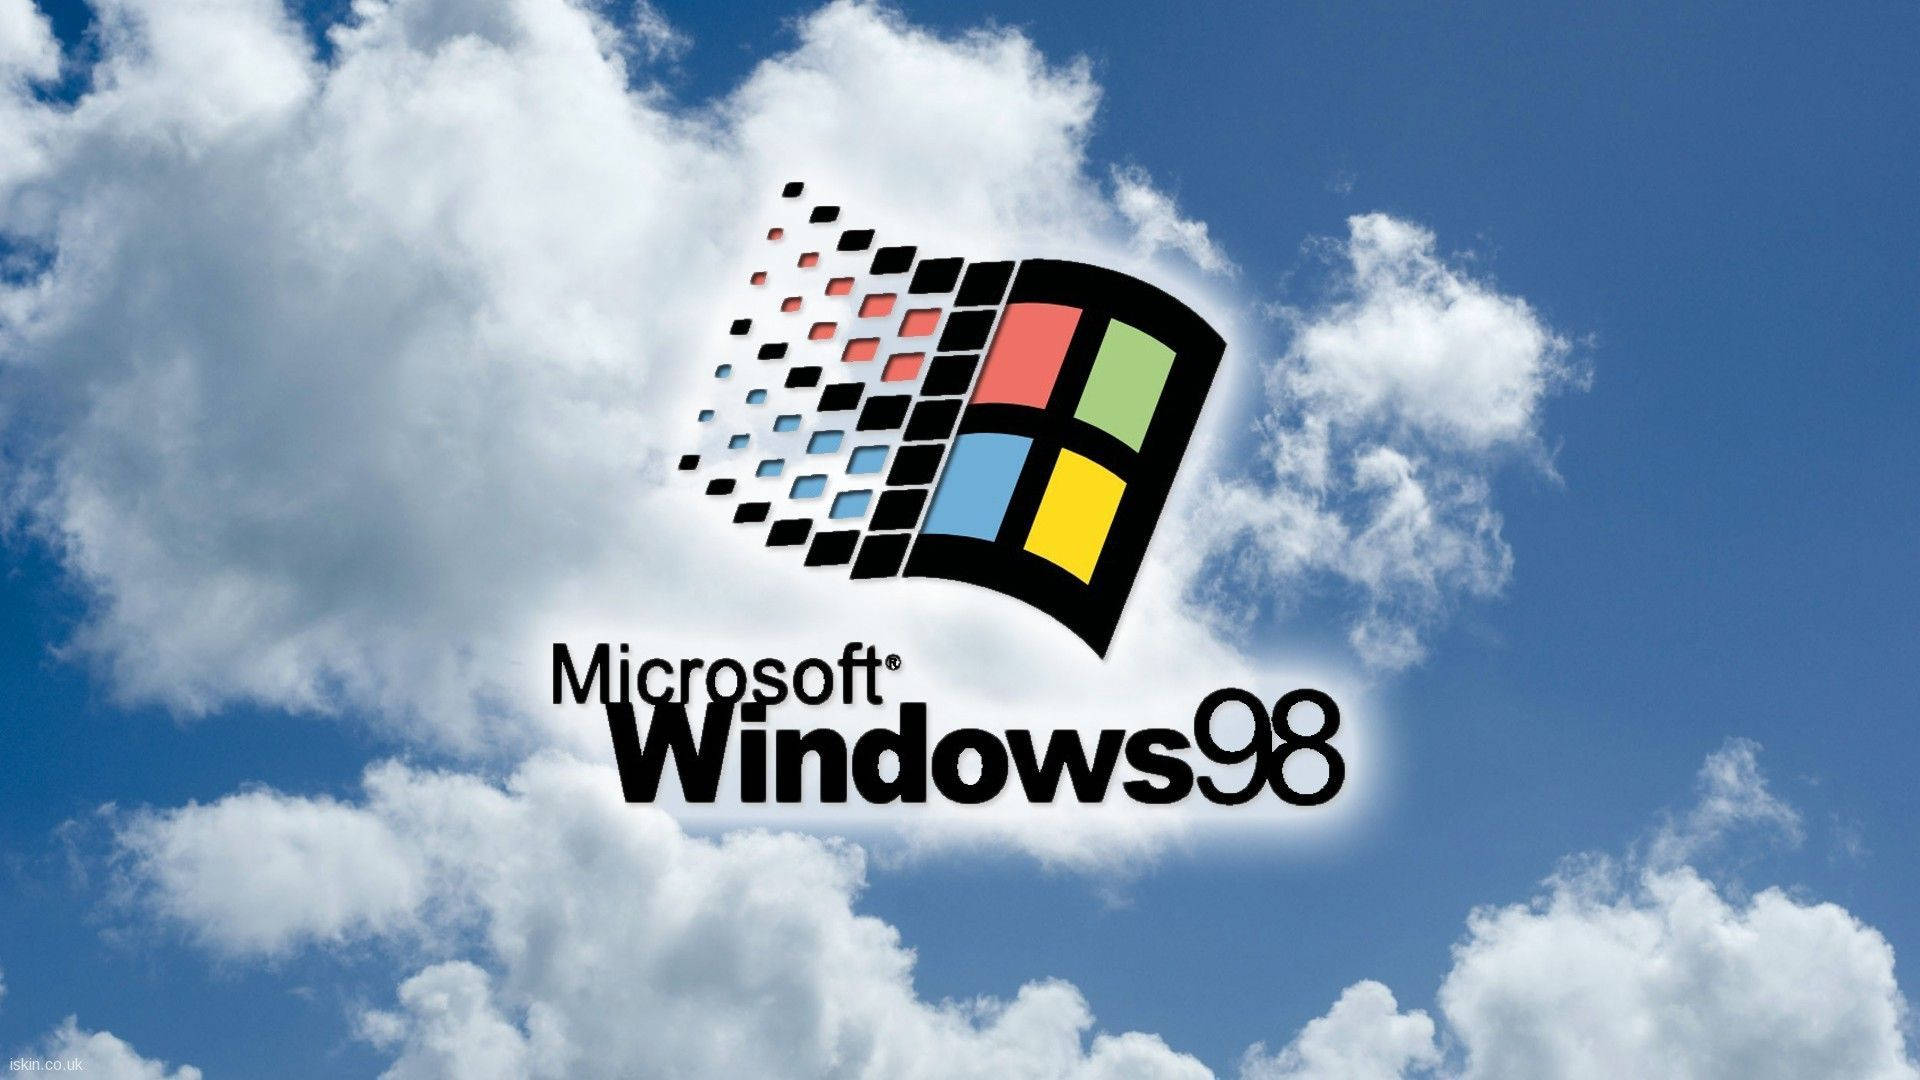 Tải hình nền Windows 98 miễn phí, tạo thành một cuộc di chuyển qua lại giữa ký ức tuổi thơ và thời đại công nghệ hiện đại. Những hình nền Windows 98 trên trang web này rất phù hợp với những người yêu thích phong cách đơn giản, bình dị và mang lại sự ấm cúng cho màn hình của bạn.